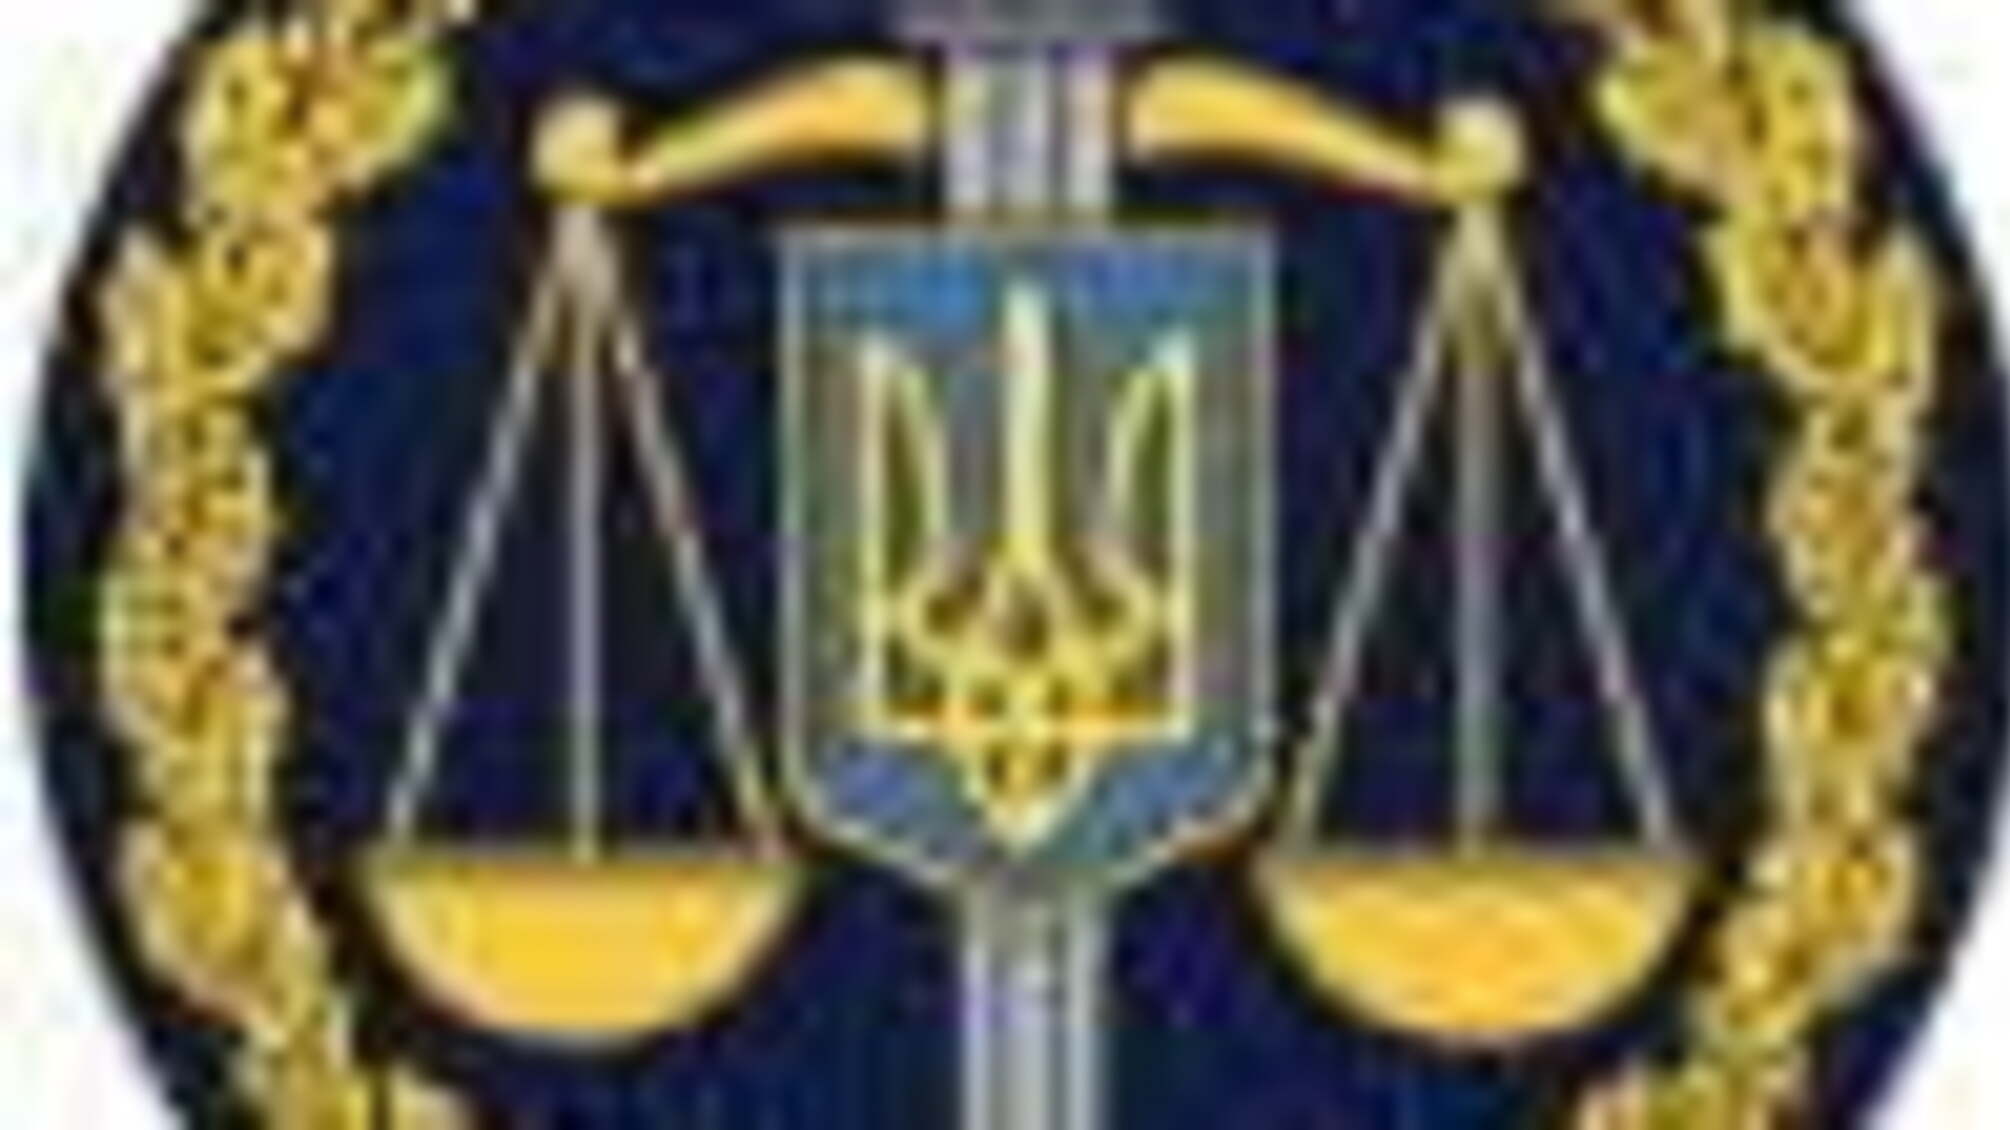 Керівництво прокуратури області відвідало «Олексіївську виправну колонію №25» (ФОТО)